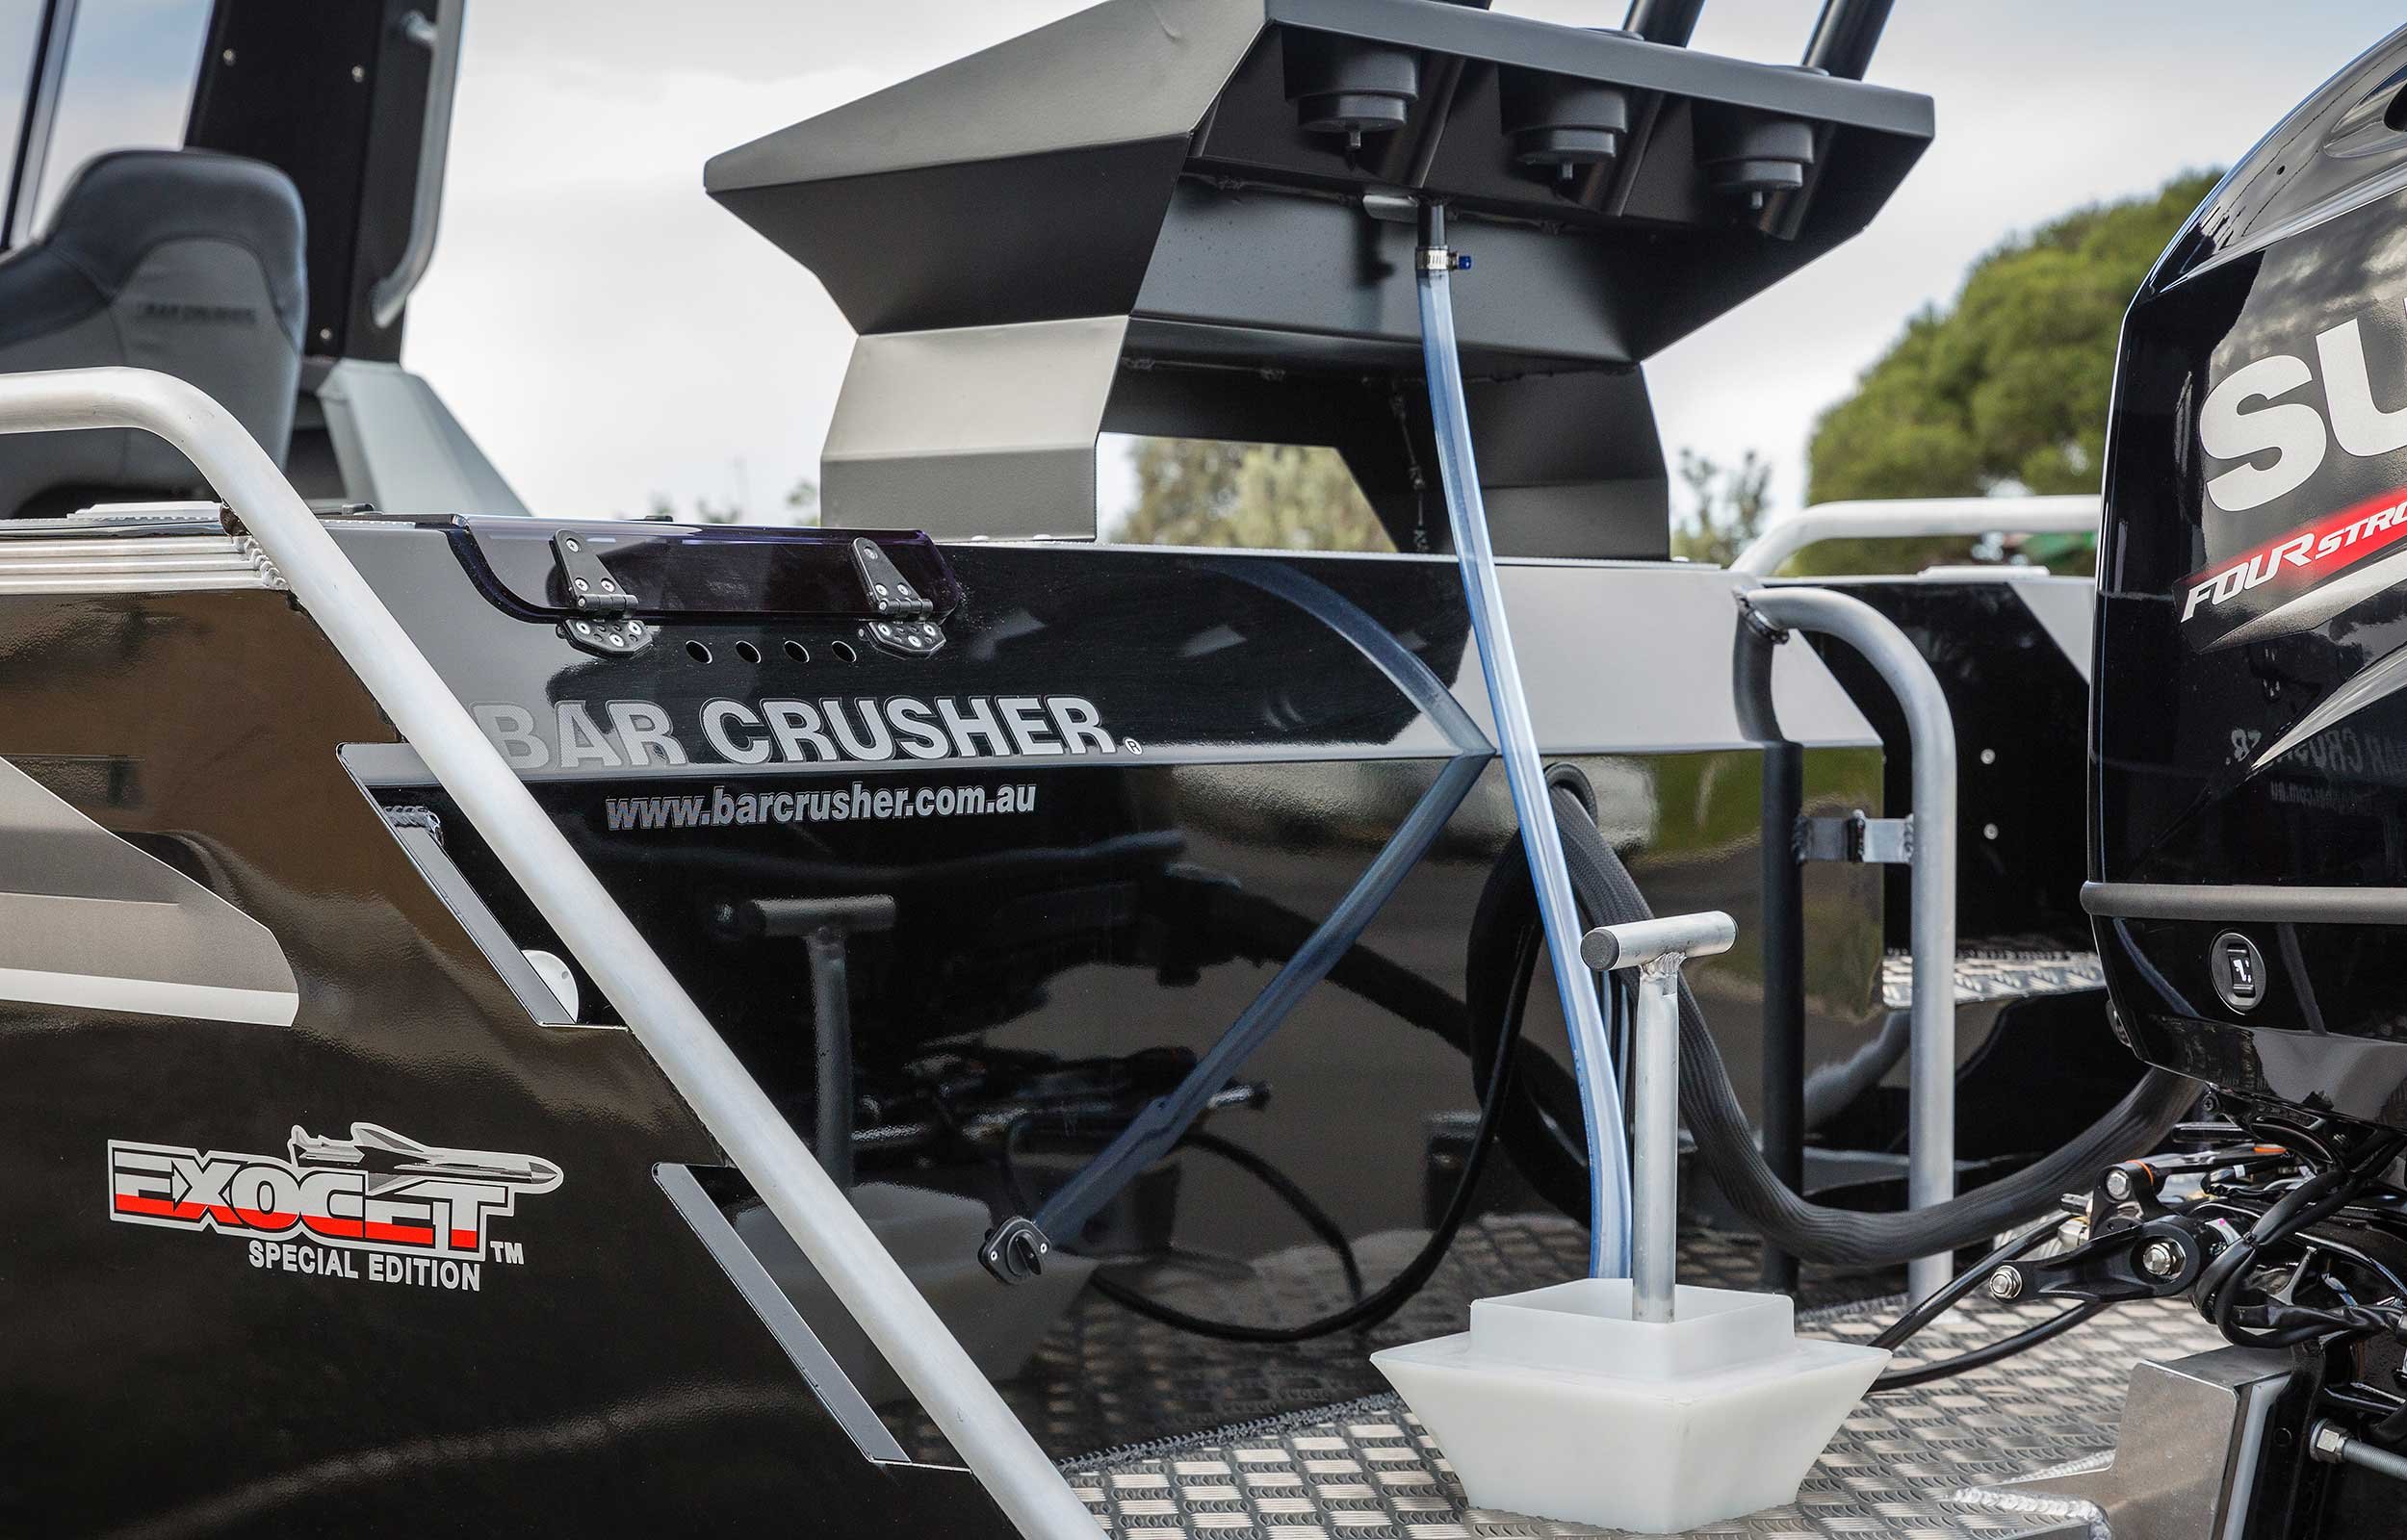 Models Bar Crusher 670ht Exocet Plate Aluminium Fishing Boat Web 4